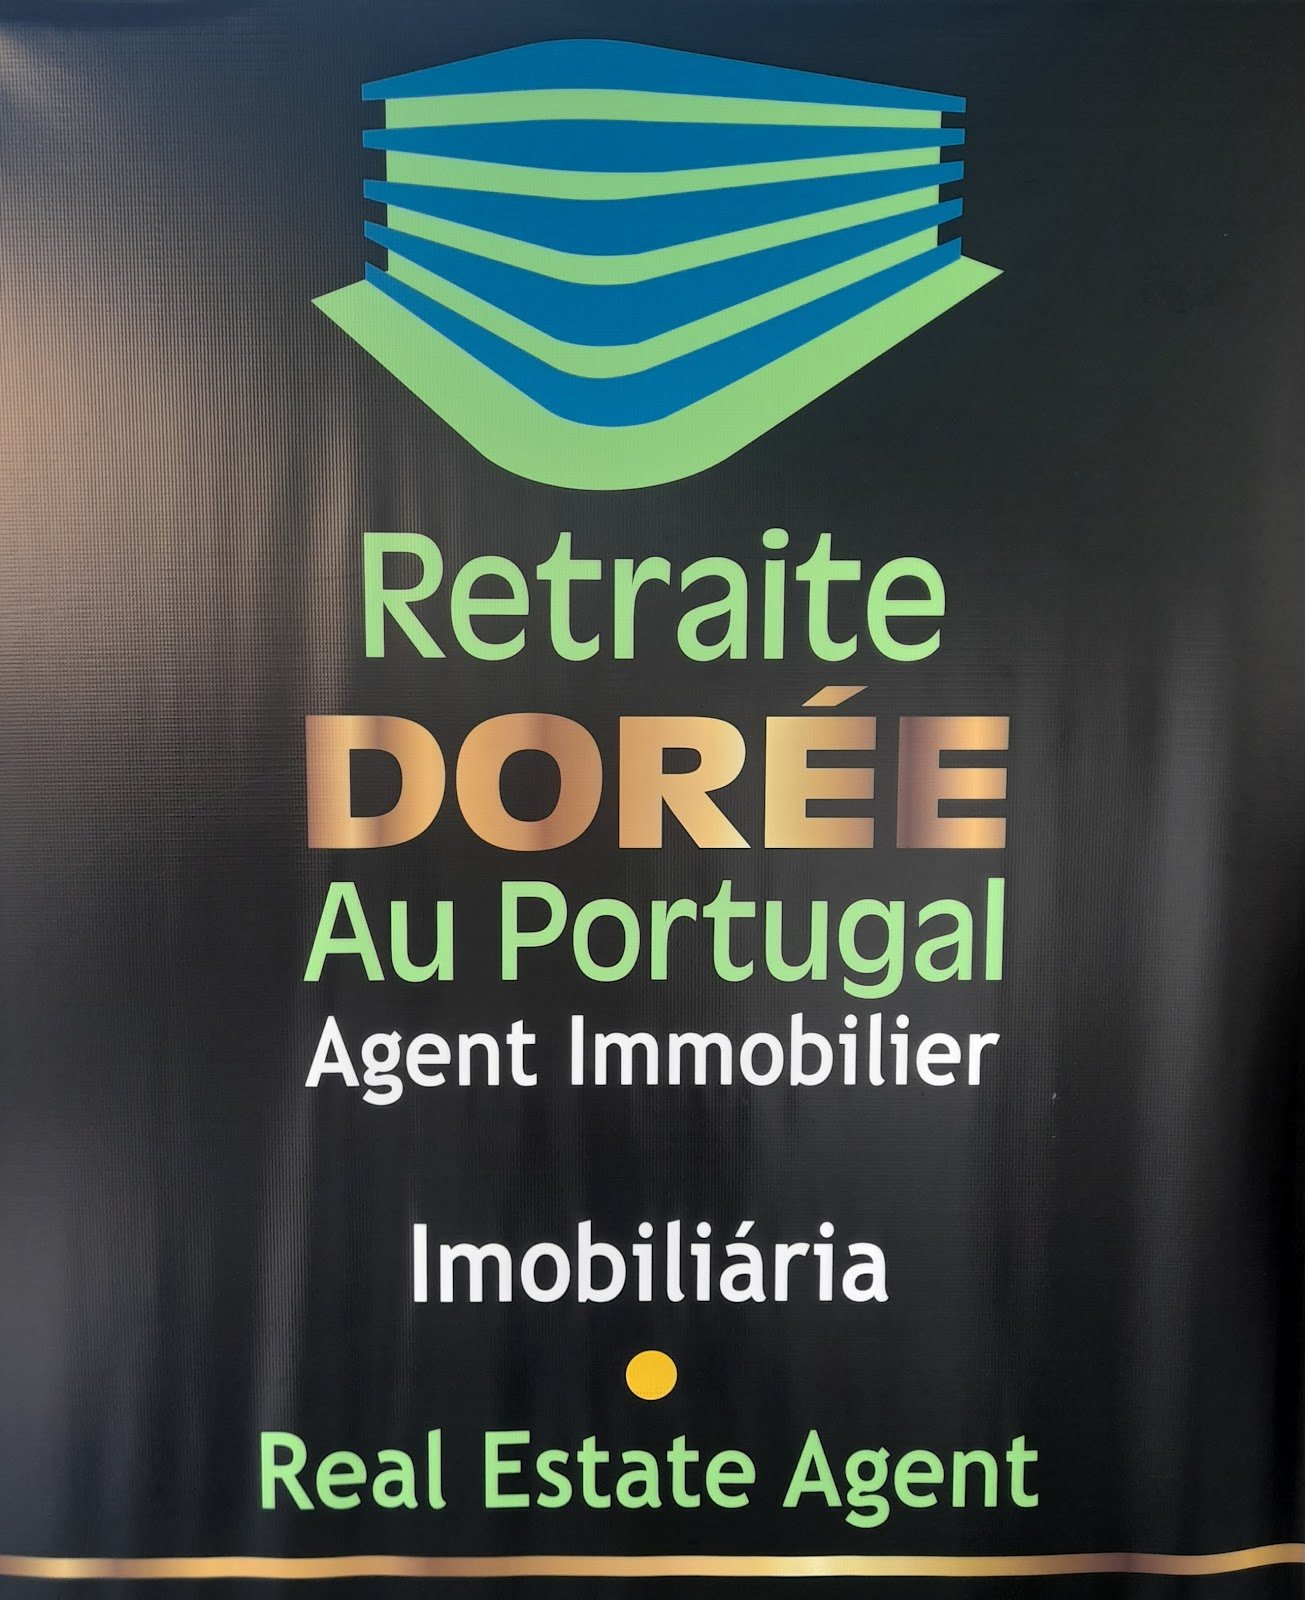  PalSul-Grupo Retraite Doreé Au Portugal - Guia Imobiliário